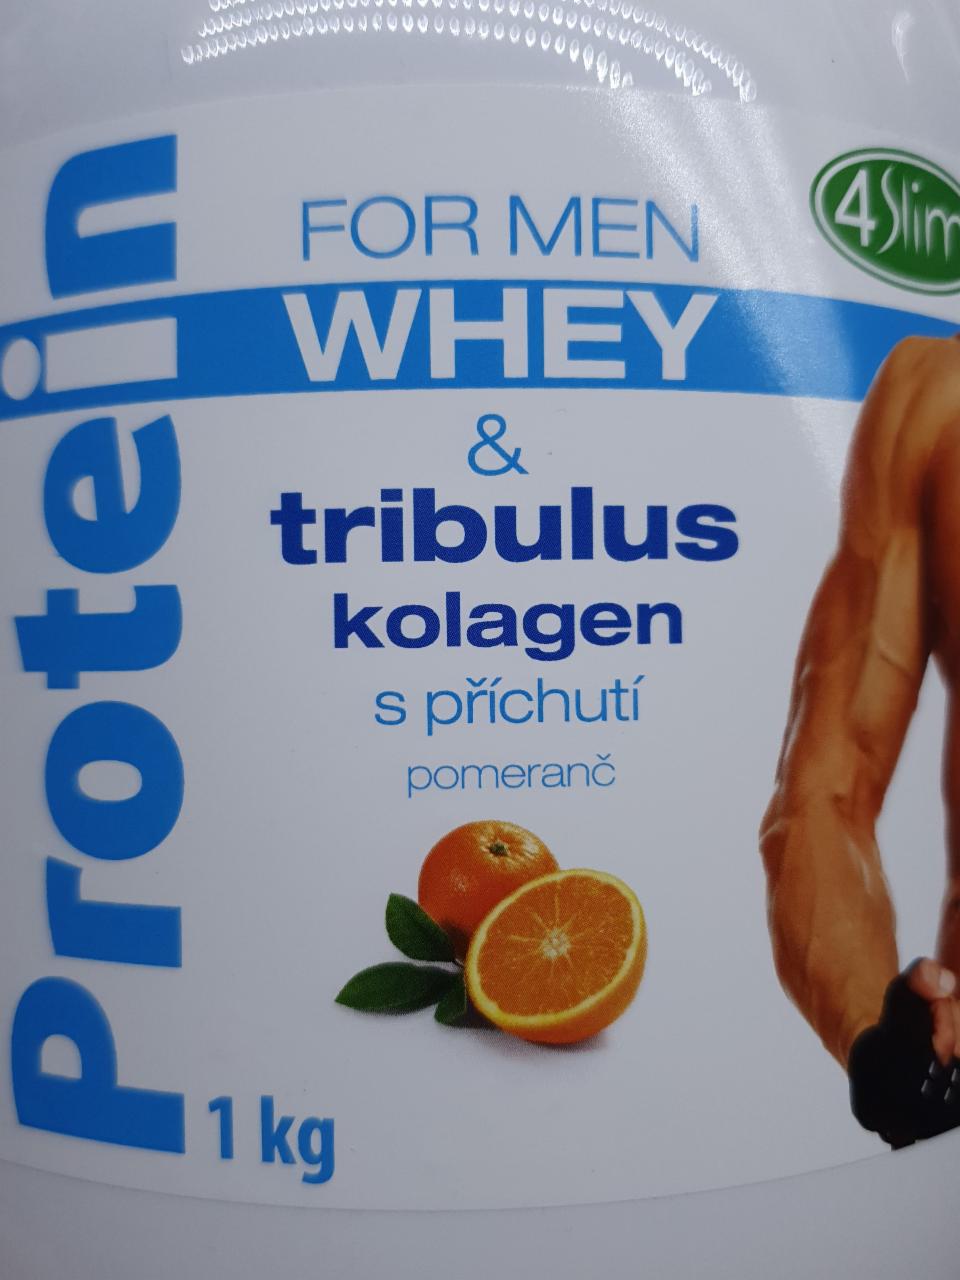 Fotografie - Protein WHEY for Men & tribulus kolagen s příchutí pomeranč 4Slim